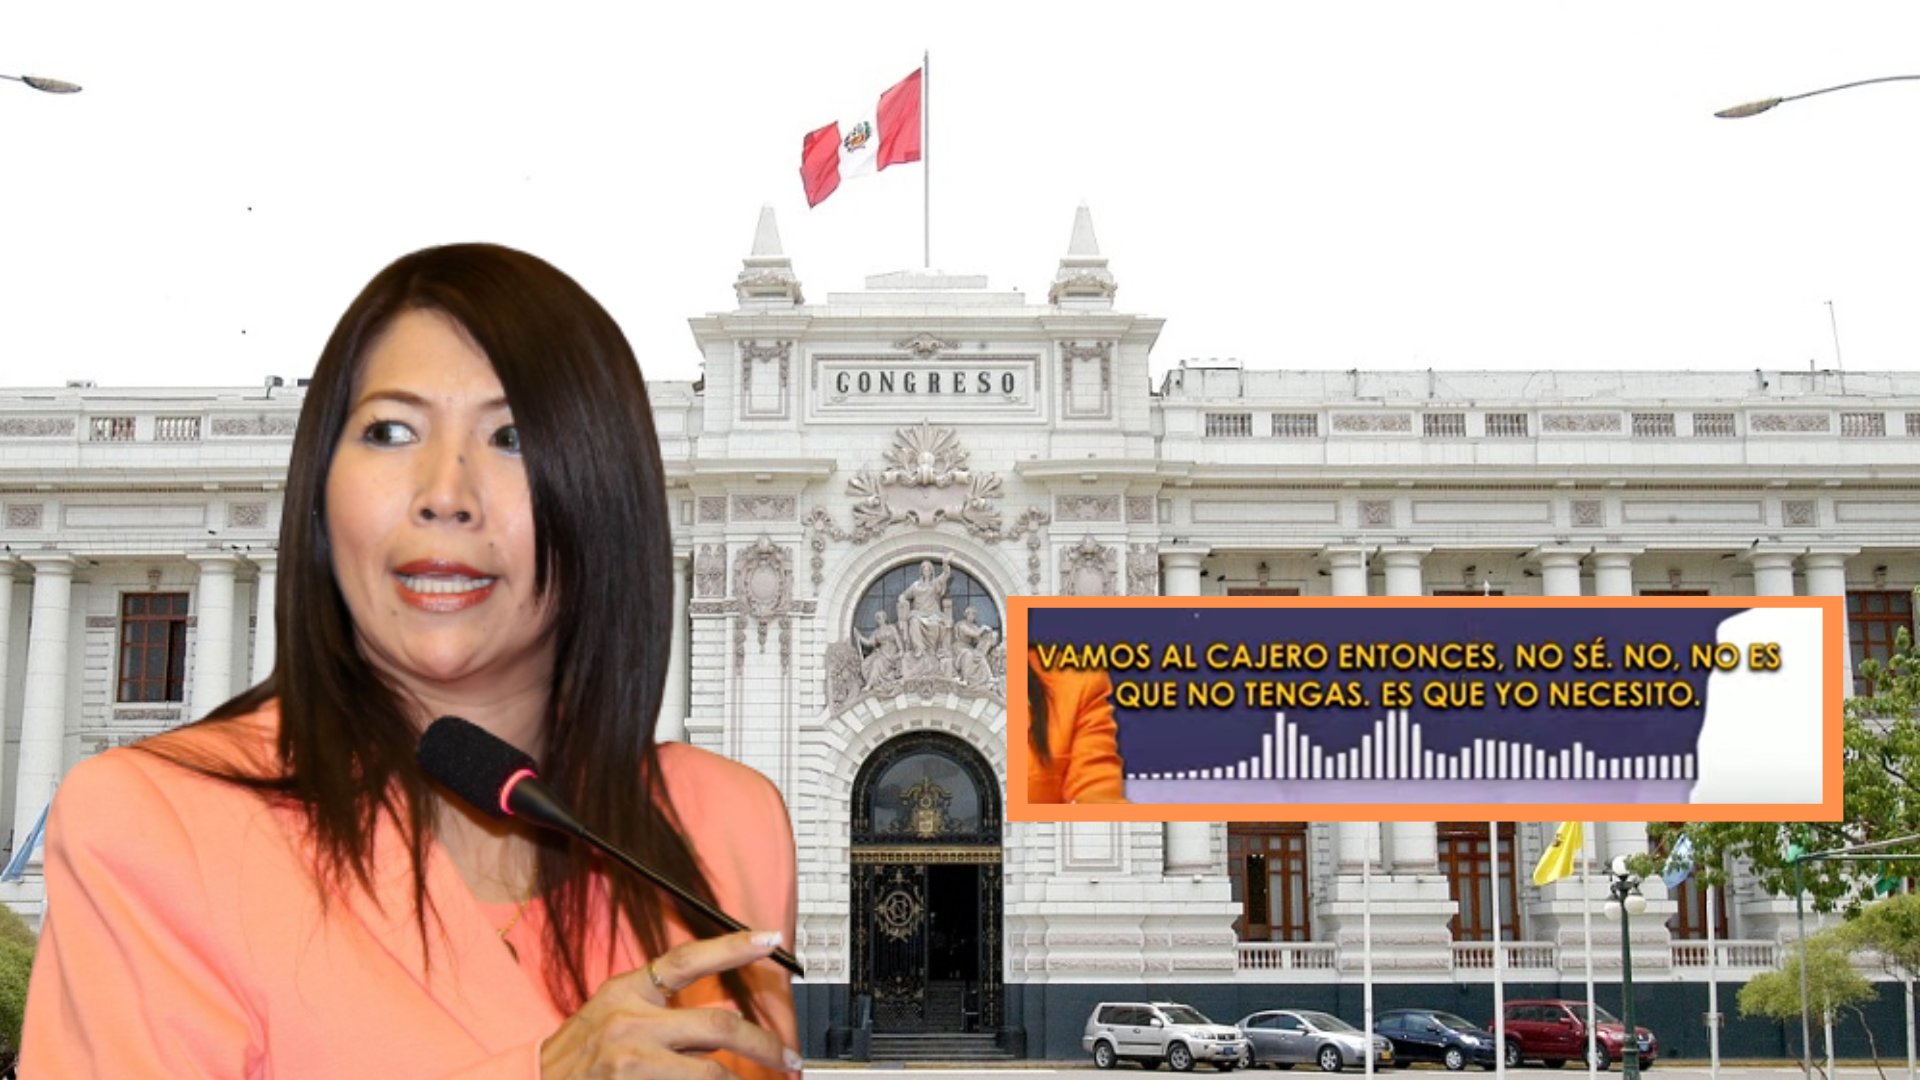 Audio involucra a congresista María del Pilar Cordero en caso de recorte de sueldo a su trabajador: “Vamos al cajero”.
Foto: Composición Infobae